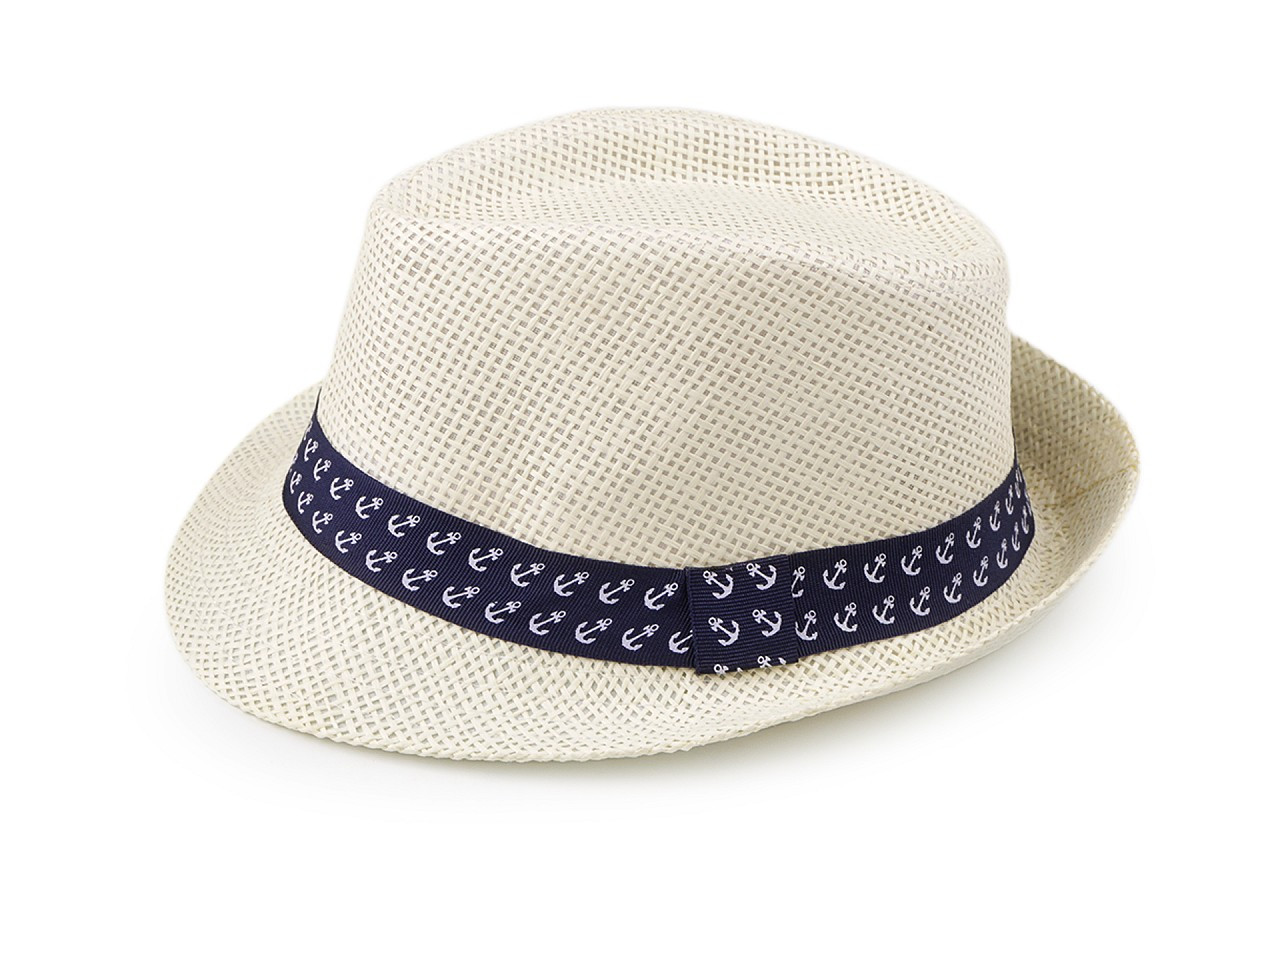 Dětský letní klobouk / slamák, barva 8 (54 cm) režná světlá